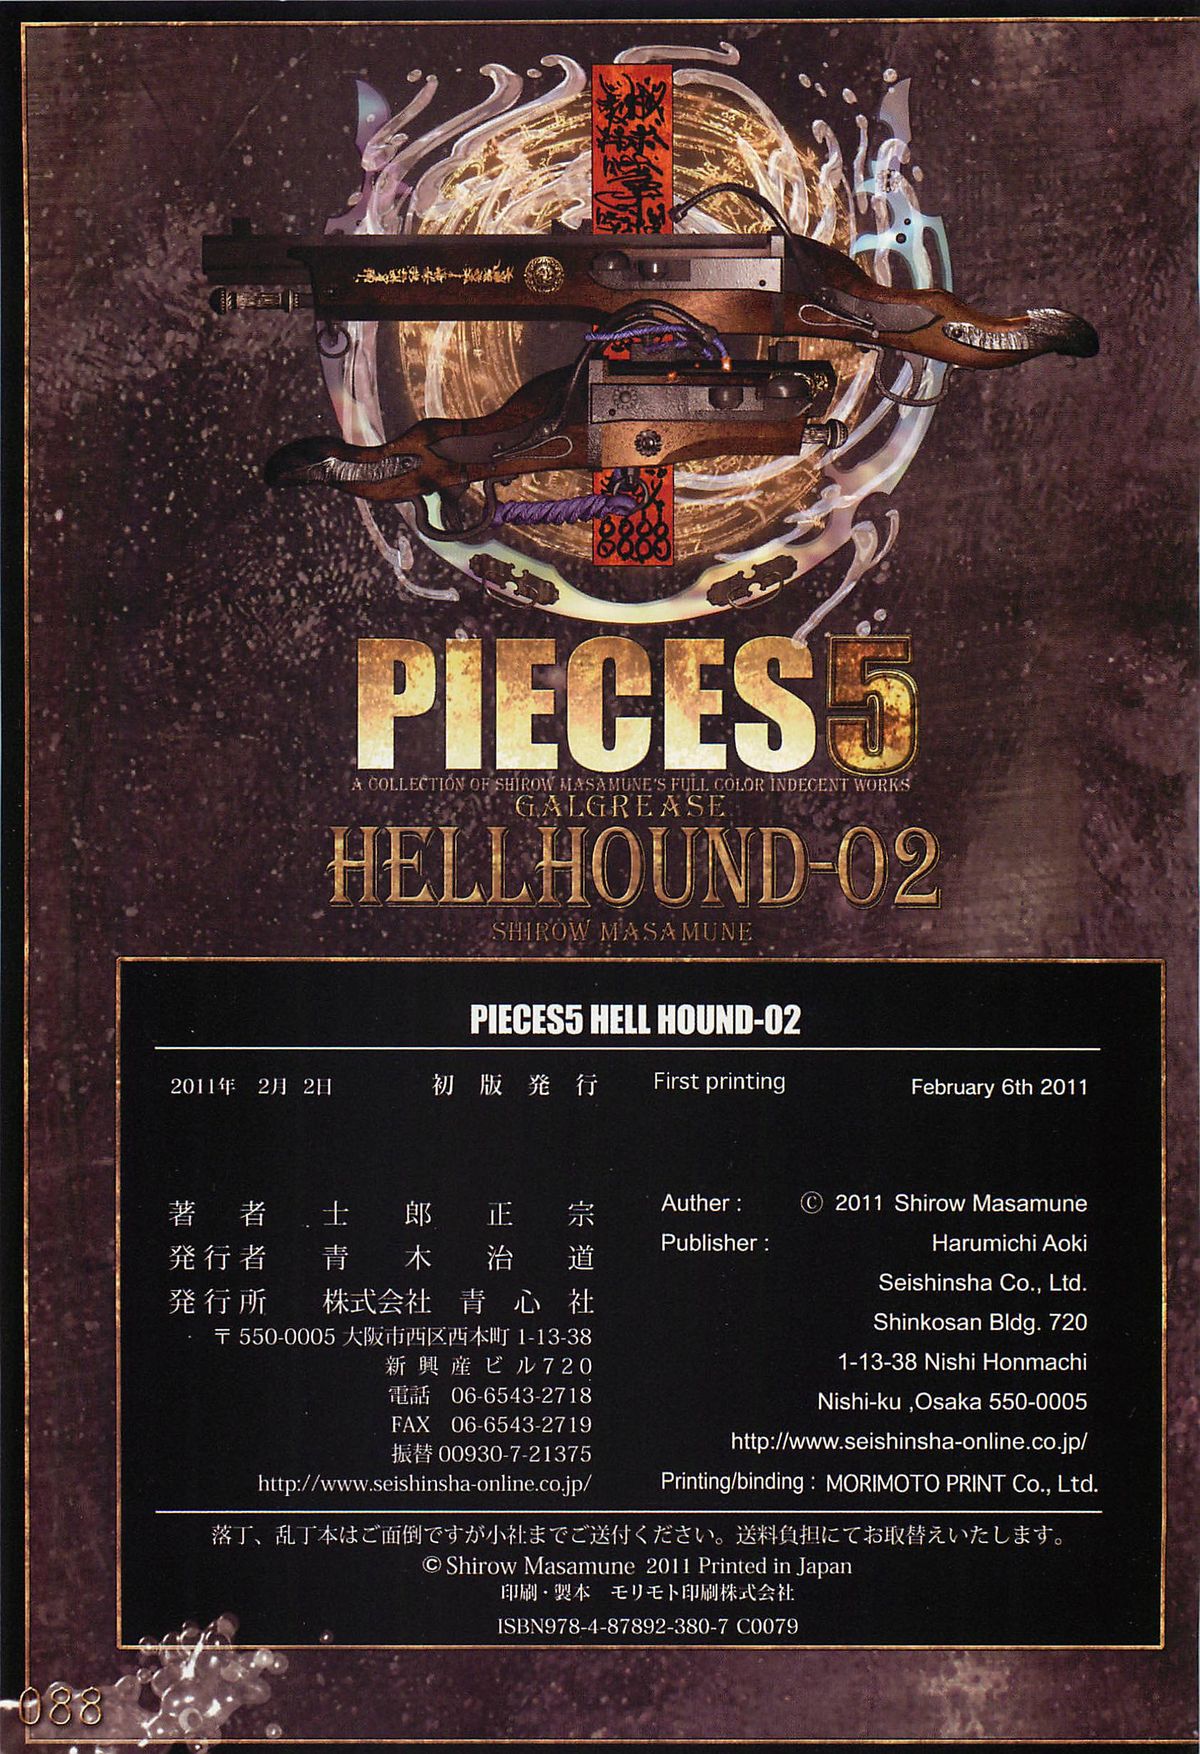 [士郎正宗] PIECES5 HELLHOUND-02